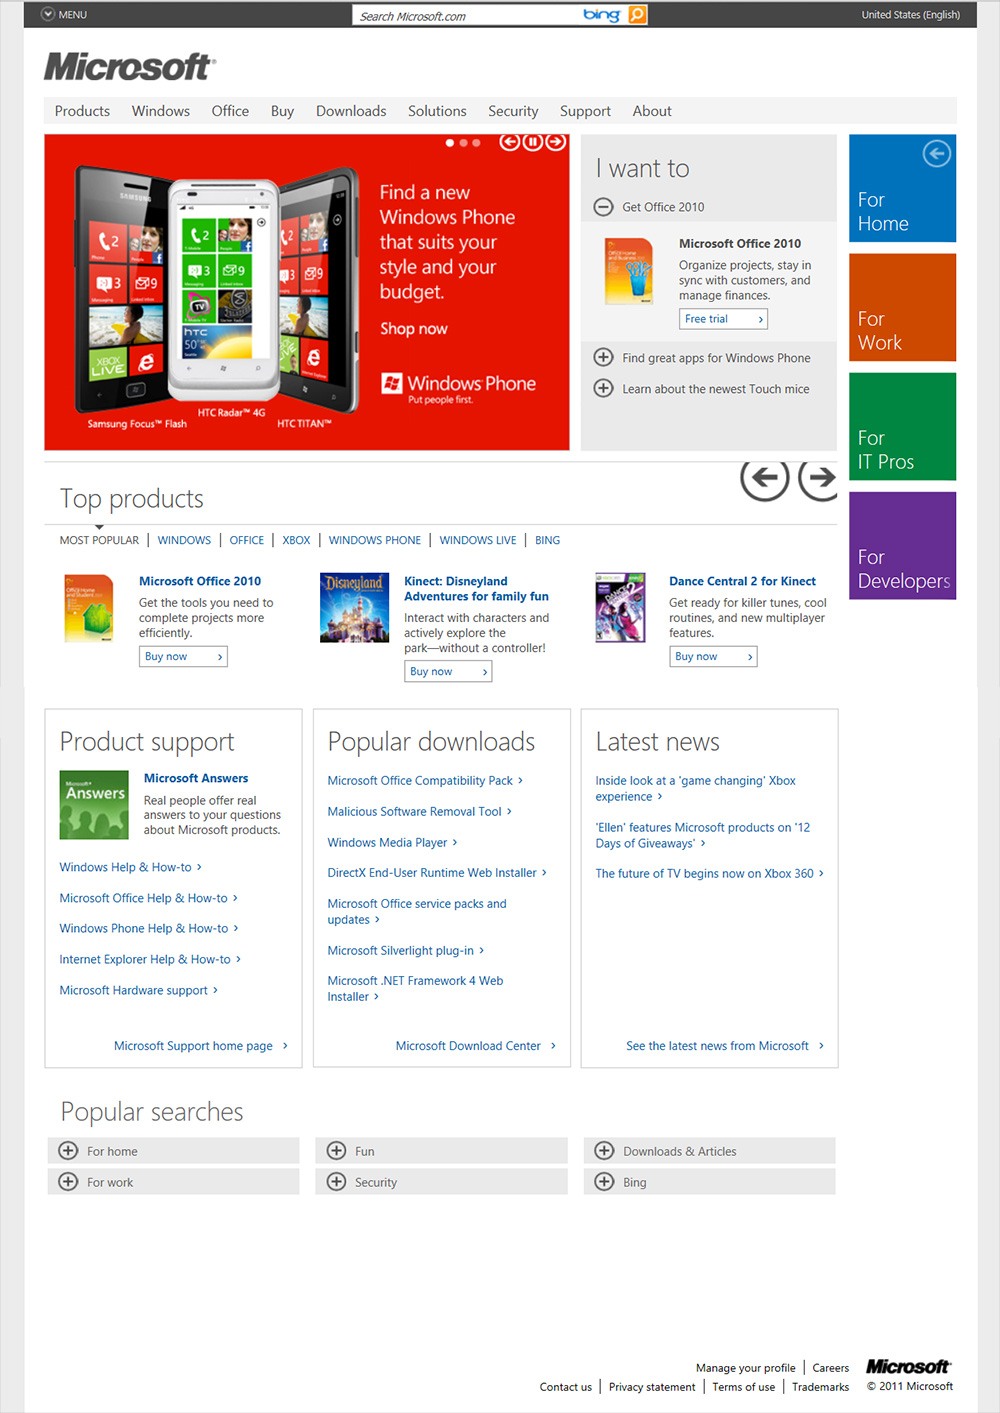 Microsoft.com Home Page December 2011